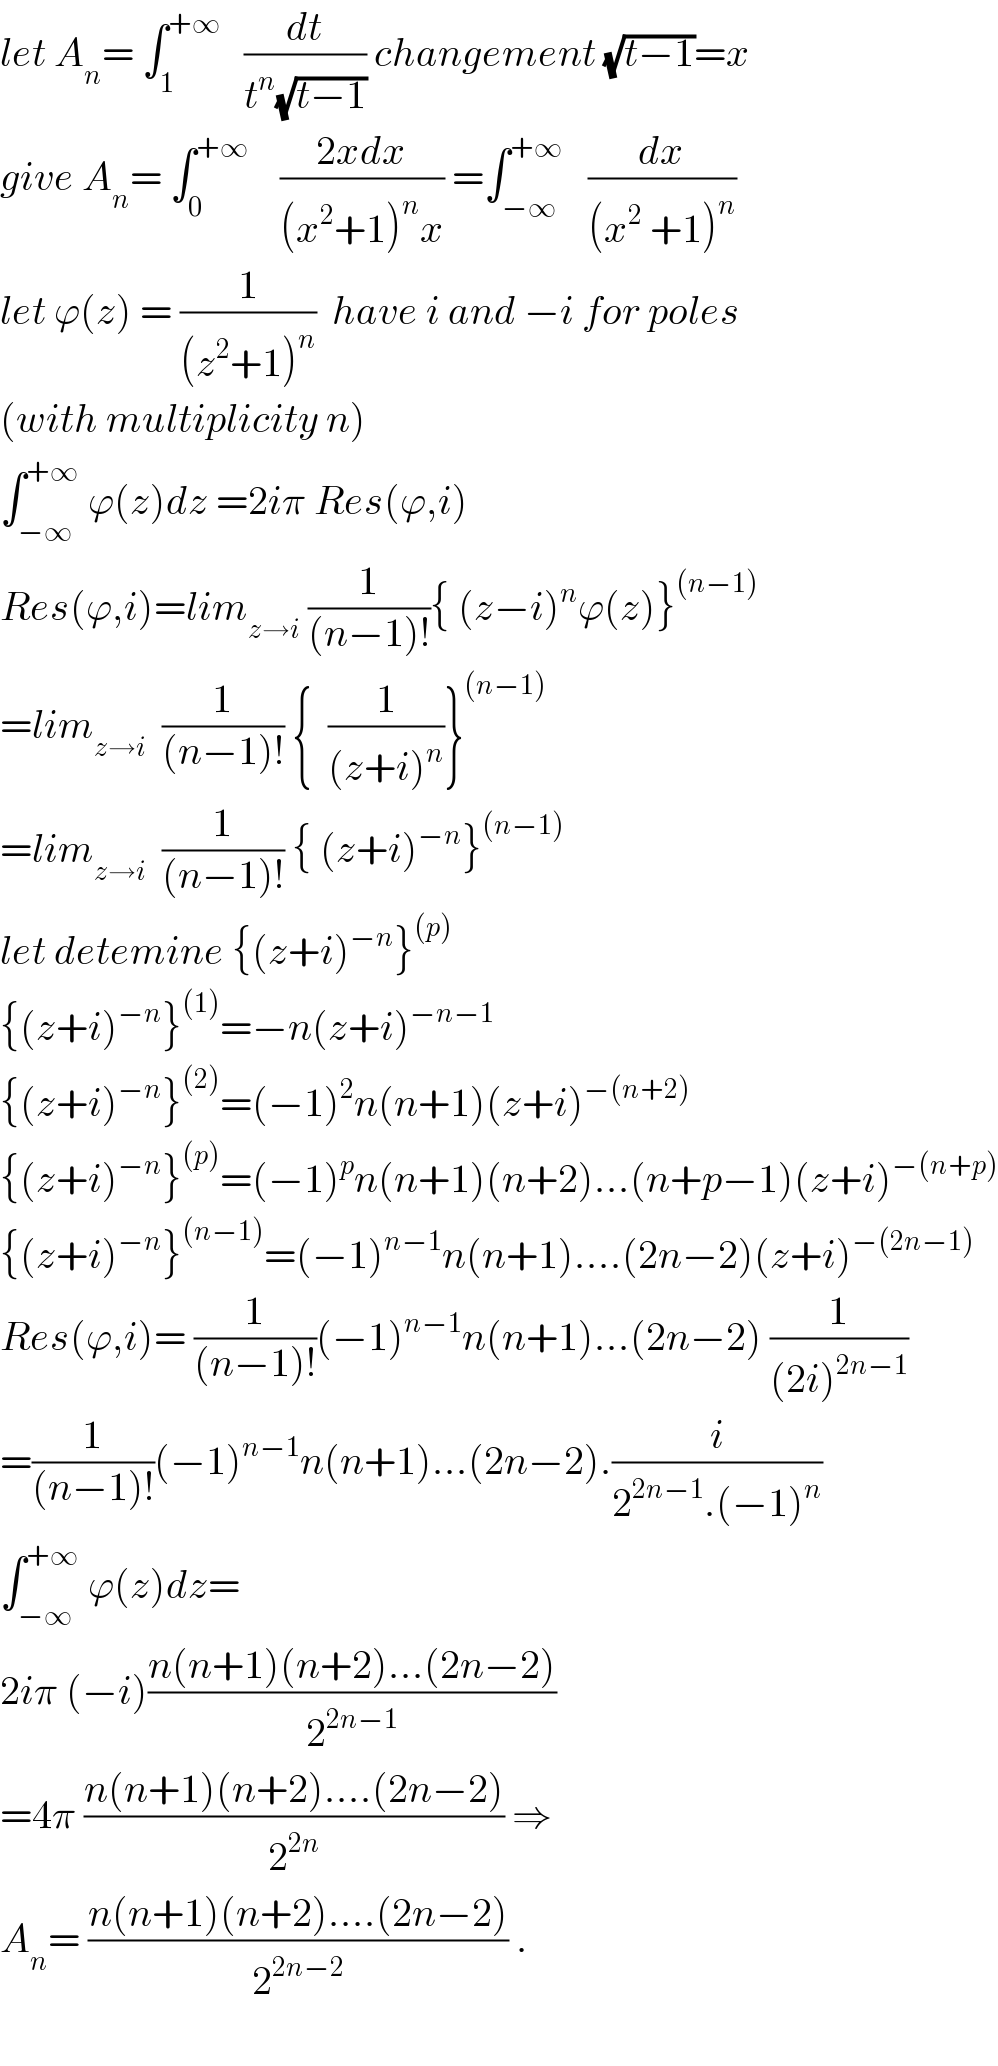 let A_n = ∫_1 ^(+∞)    (dt/(t^n (√(t−1)))) changement (√(t−1))=x   give A_n = ∫_0 ^(+∞)     ((2xdx)/((x^2 +1)^n x)) =∫_(−∞) ^(+∞)    (dx/((x^2  +1)^n ))  let ϕ(z) = (1/((z^2 +1)^n ))  have i and −i for poles  (with multiplicity n)  ∫_(−∞) ^(+∞)  ϕ(z)dz =2iπ Res(ϕ,i)  Res(ϕ,i)=lim_(z→i)  (1/((n−1)!)){ (z−i)^n ϕ(z)}^((n−1))   =lim_(z→i)   (1/((n−1)!)) {  (1/((z+i)^n ))}^((n−1))   =lim_(z→i)   (1/((n−1)!)) { (z+i)^(−n) }^((n−1))   let detemine {(z+i)^(−n) }^((p))   {(z+i)^(−n) }^((1)) =−n(z+i)^(−n−1)   {(z+i)^(−n) }^((2)) =(−1)^2 n(n+1)(z+i)^(−(n+2))   {(z+i)^(−n) }^((p)) =(−1)^p n(n+1)(n+2)...(n+p−1)(z+i)^(−(n+p))   {(z+i)^(−n) }^((n−1)) =(−1)^(n−1) n(n+1)....(2n−2)(z+i)^(−(2n−1))   Res(ϕ,i)= (1/((n−1)!))(−1)^(n−1) n(n+1)...(2n−2) (1/((2i)^(2n−1) ))  =(1/((n−1)!))(−1)^(n−1) n(n+1)...(2n−2).(i/(2^(2n−1) .(−1)^n ))  ∫_(−∞) ^(+∞)  ϕ(z)dz=  2iπ (−i)((n(n+1)(n+2)...(2n−2))/2^(2n−1) )  =4π ((n(n+1)(n+2)....(2n−2))/2^(2n) ) ⇒  A_n = ((n(n+1)(n+2)....(2n−2))/2^(2n−2) ) .    